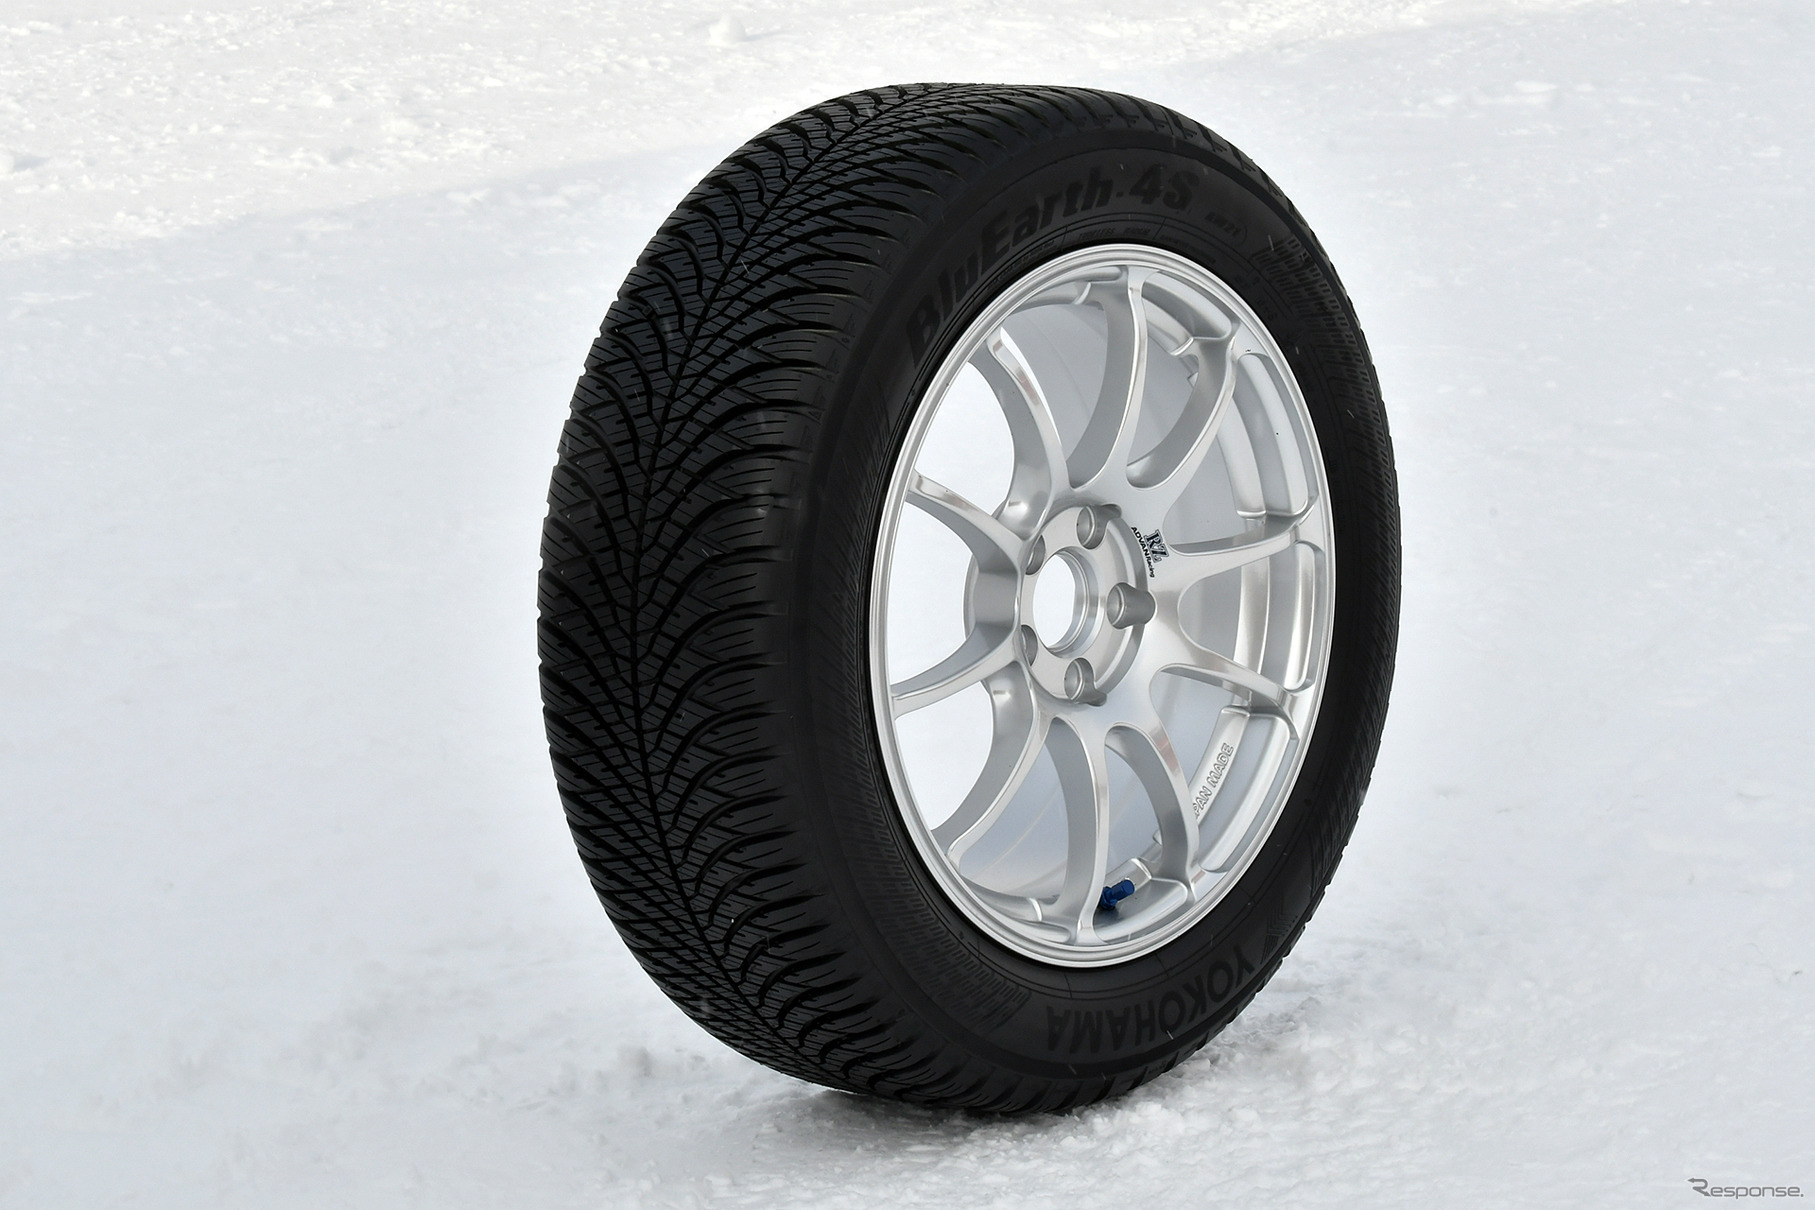 雪にも強いオールシーズンタイヤ「ブルーアース-4S AW21」